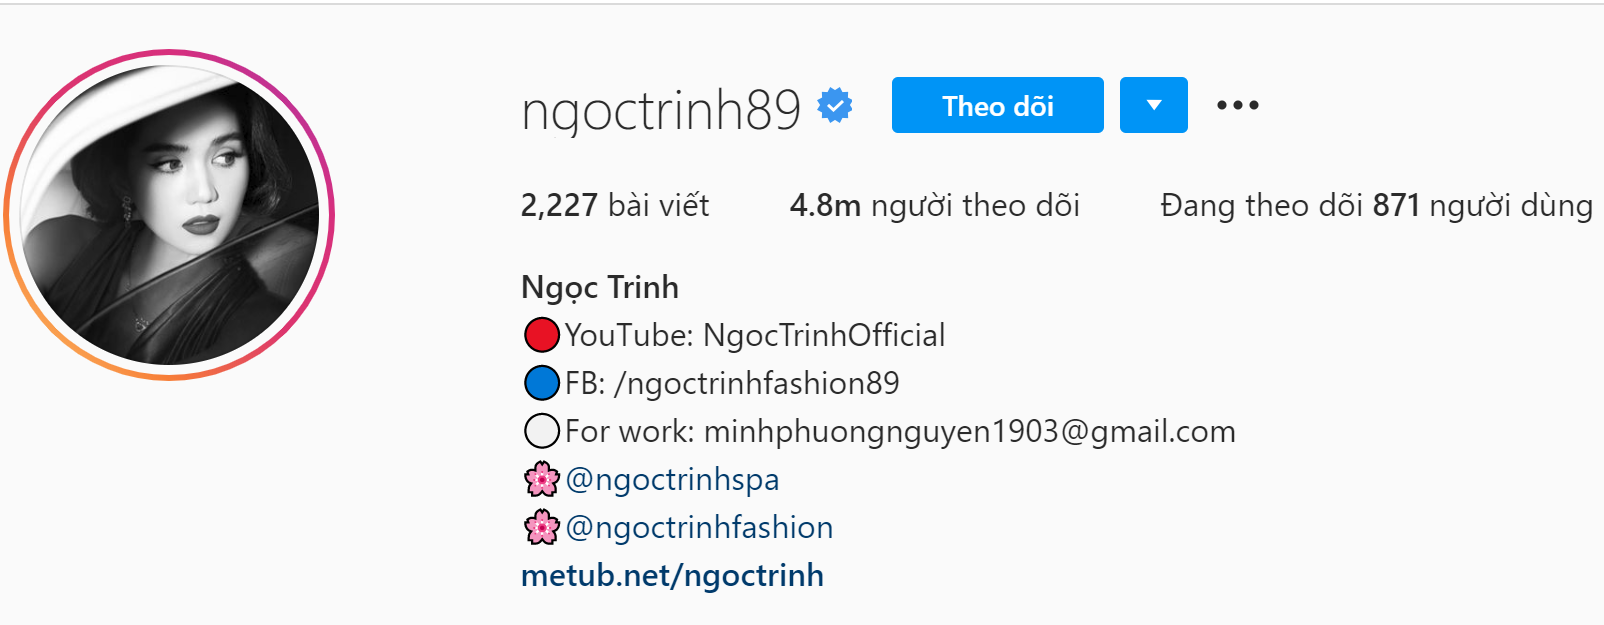 Tài khoản Instagram của Ngọc Trinh hiện có 4.8 triệu người theo dõi